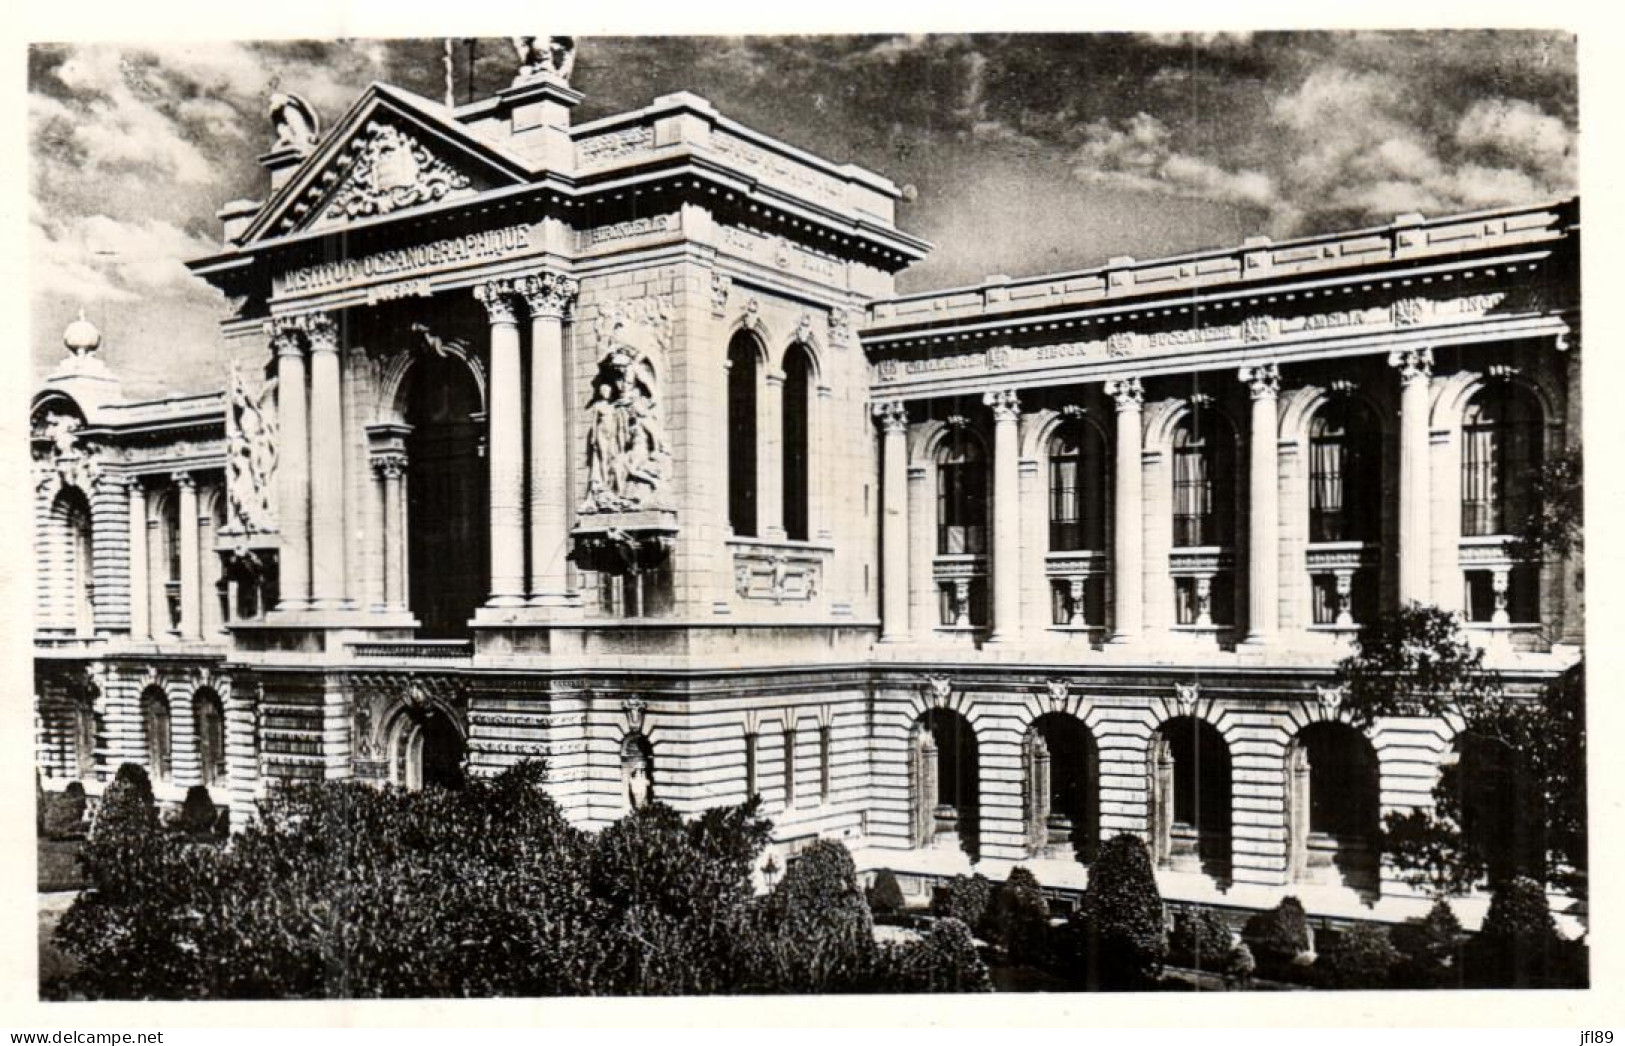 Monaco > Monte-Carlo - Le Musée Océonographique - 7507 - Monte-Carlo